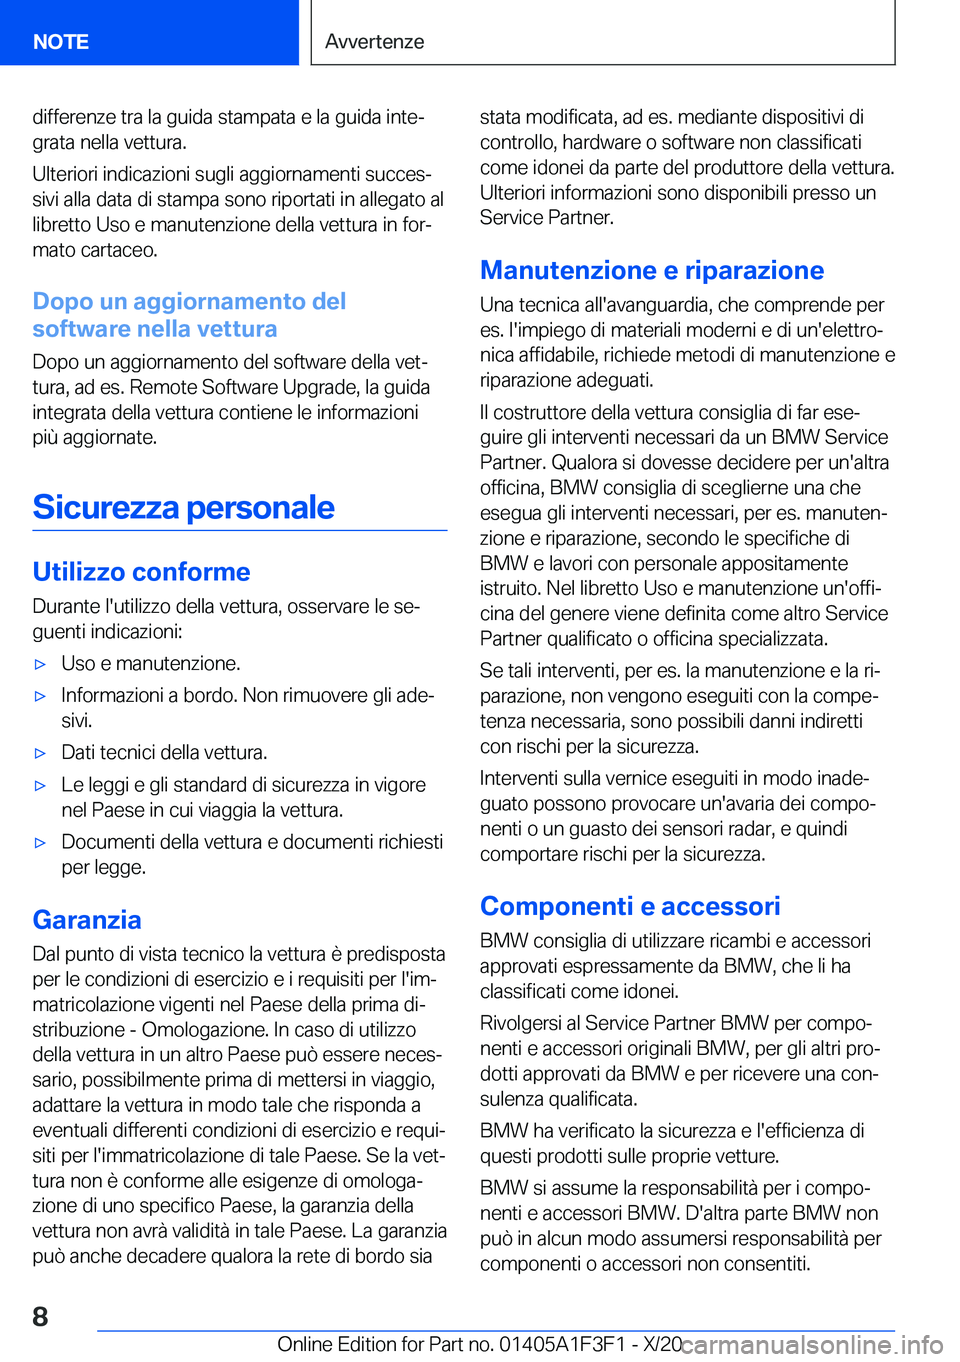 BMW X5 2021  Libretti Di Uso E manutenzione (in Italian) �d�i�f�f�e�r�e�n�z�e��t�r�a��l�a��g�u�i�d�a��s�t�a�m�p�a�t�a��e��l�a��g�u�i�d�a��i�n�t�eª�g�r�a�t�a��n�e�l�l�a��v�e�t�t�u�r�a�.
�U�l�t�e�r�i�o�r�i��i�n�d�i�c�a�z�i�o�n�i��s�u�g�l�i��a�g